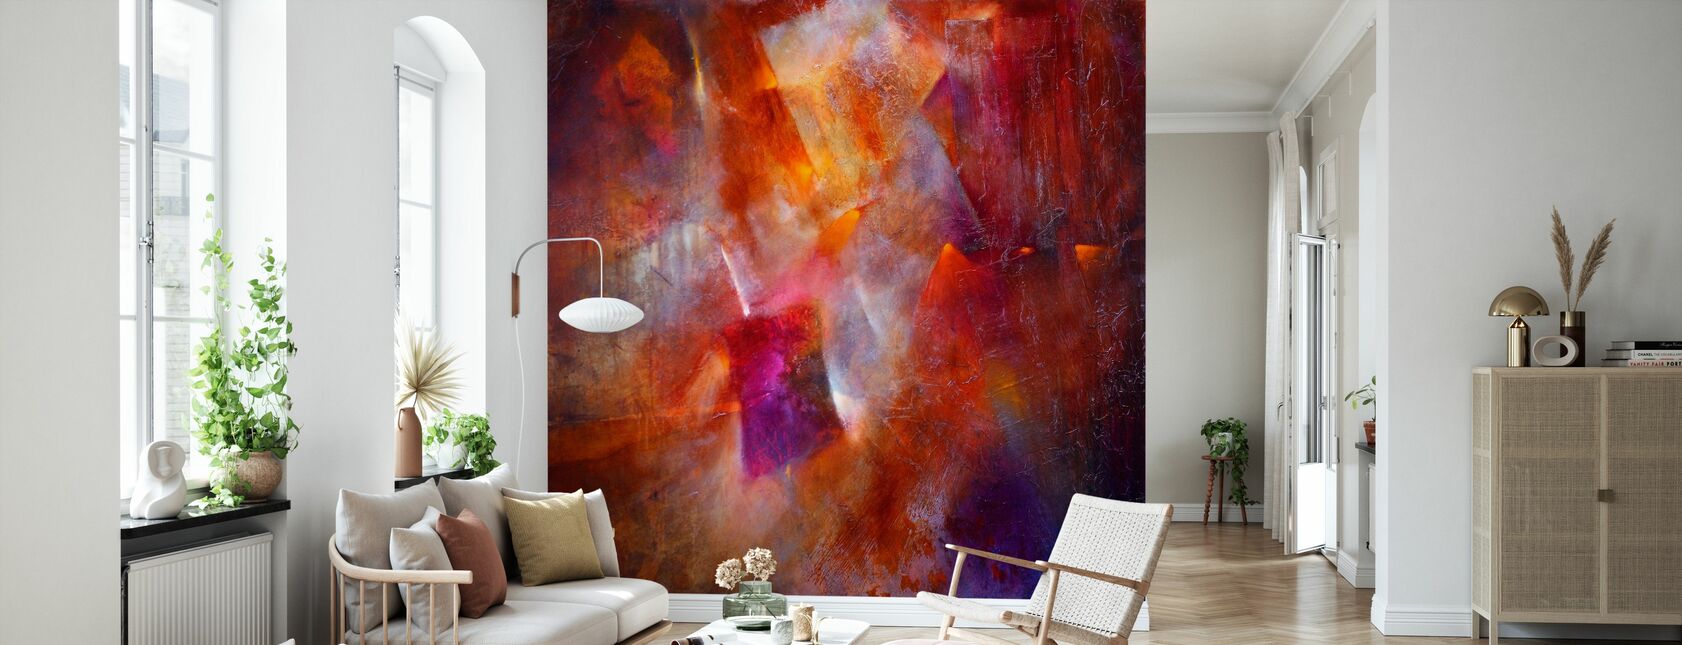 Fireplace Fire - Wallpaper - Living Room